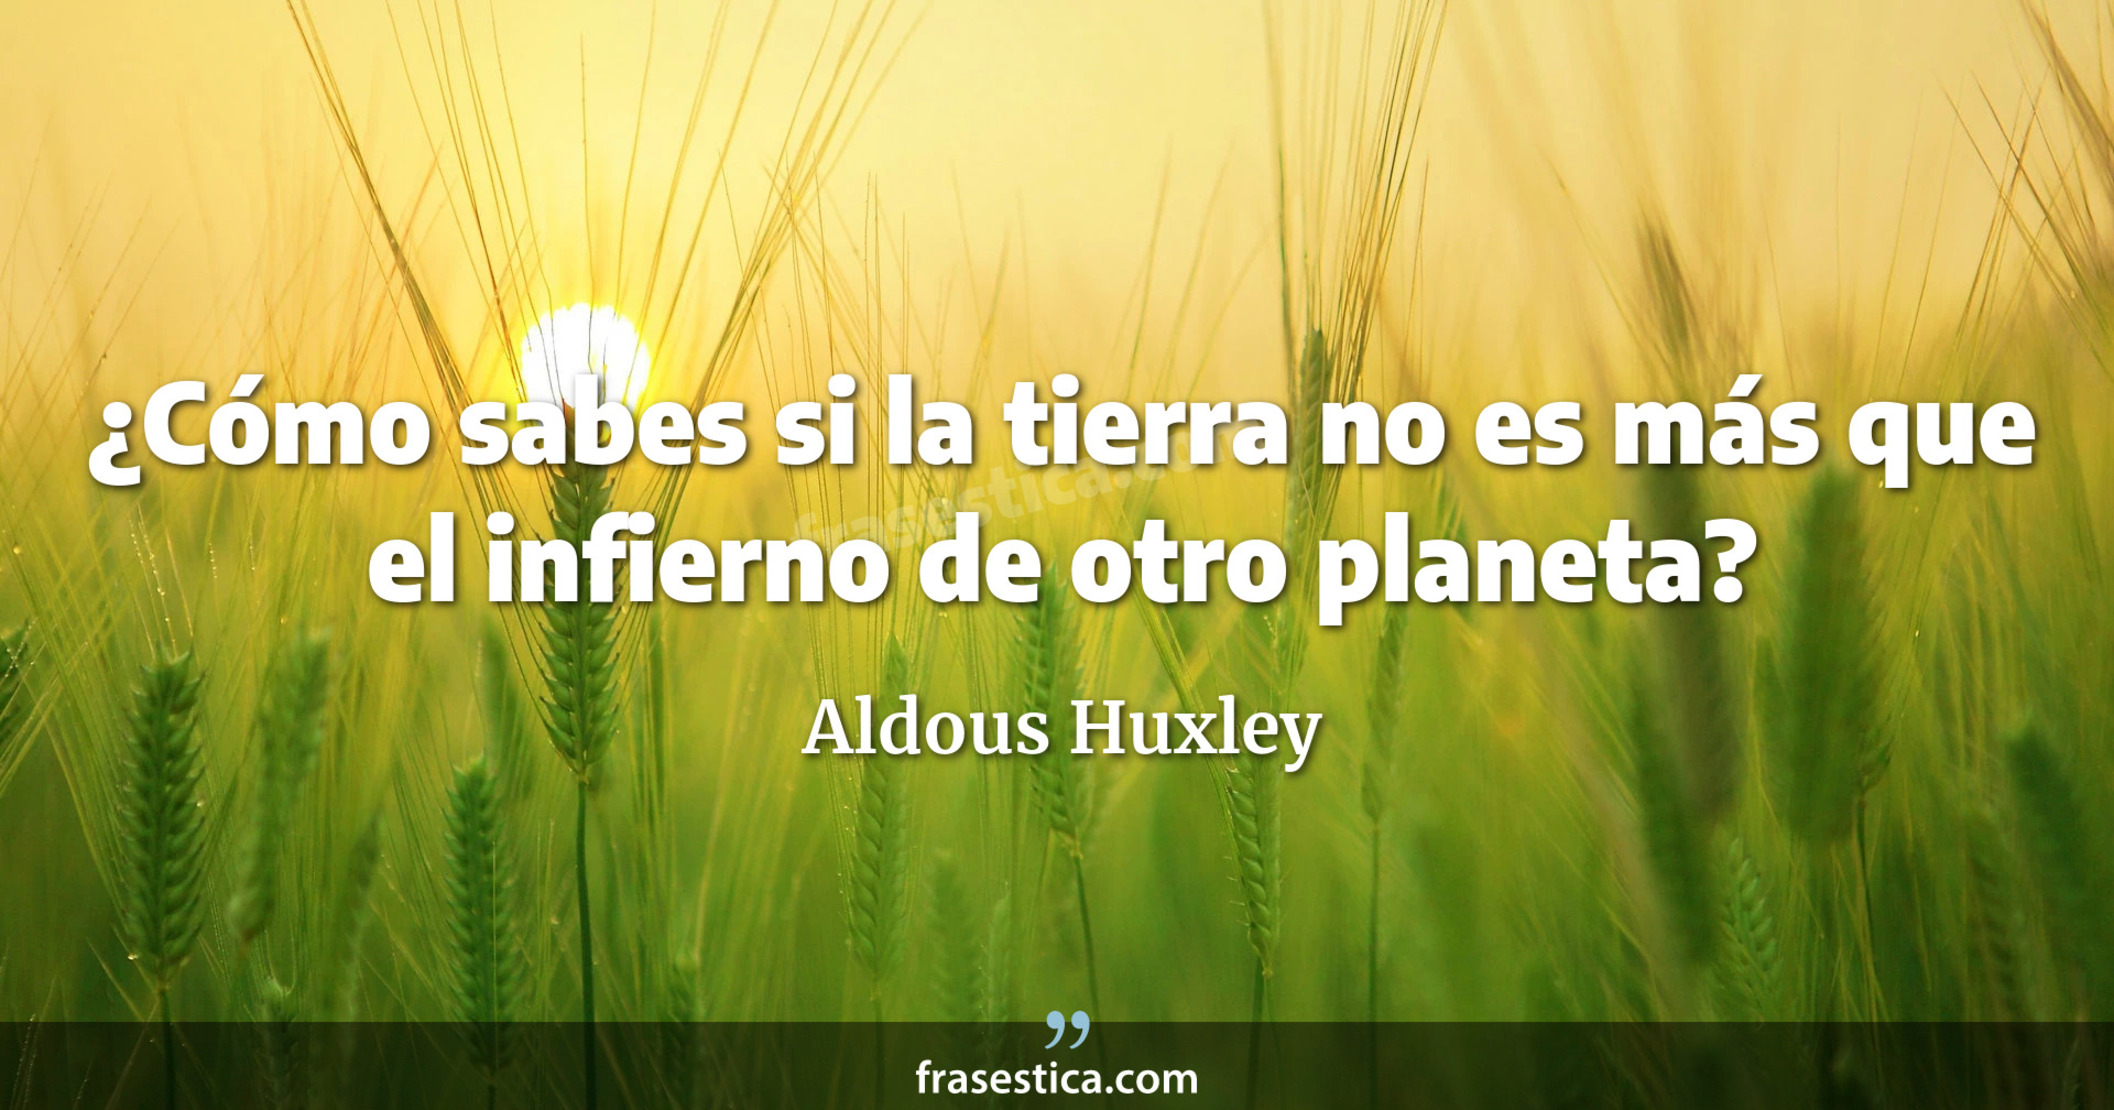 ¿Cómo sabes si la tierra no es más que el infierno de otro planeta? - Aldous Huxley